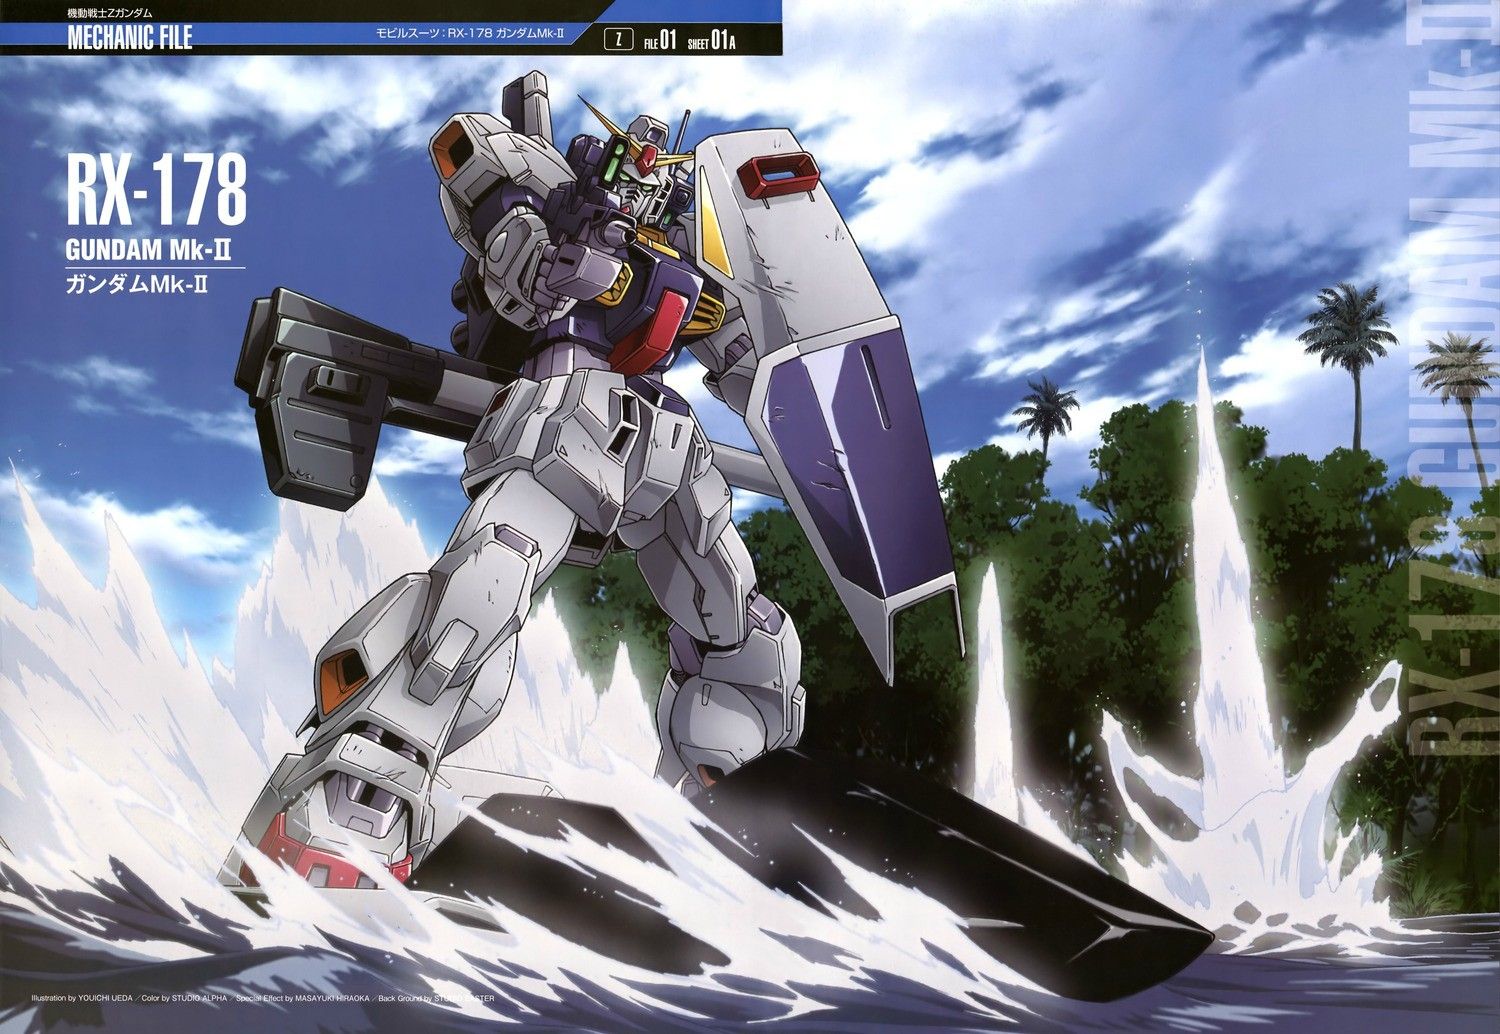 Gundam Wallpaper. Gundam, Gundam wallpaper, Zeta gundam